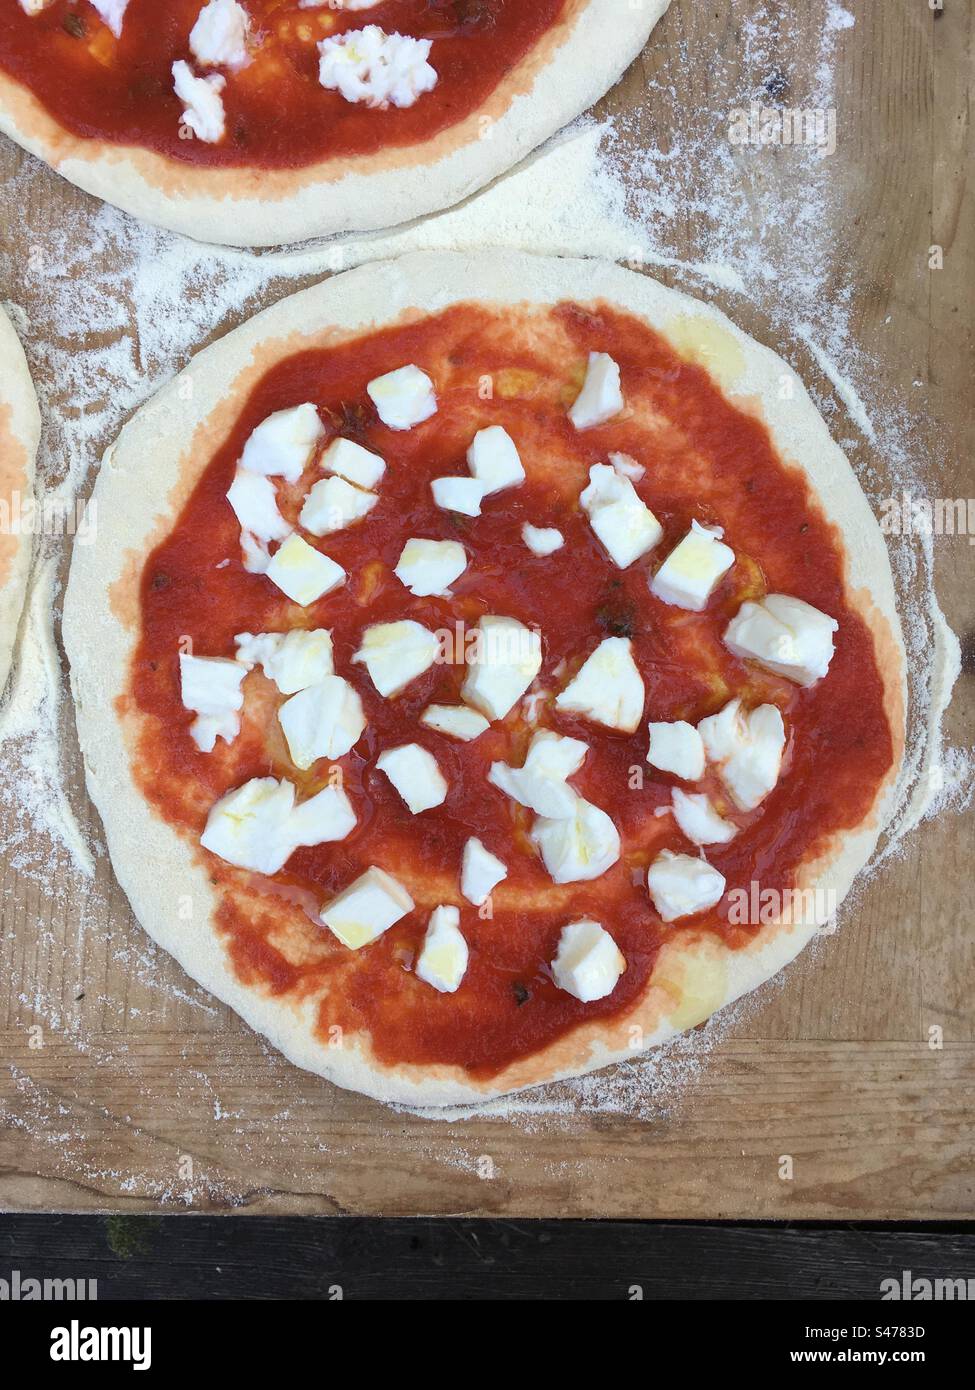 Pizza Margherita pronta per essere informata. Pizza italiana, mozzarella di pizza, pomodoro e origano. Su spianatoia di legno infarinata. Foto Stock